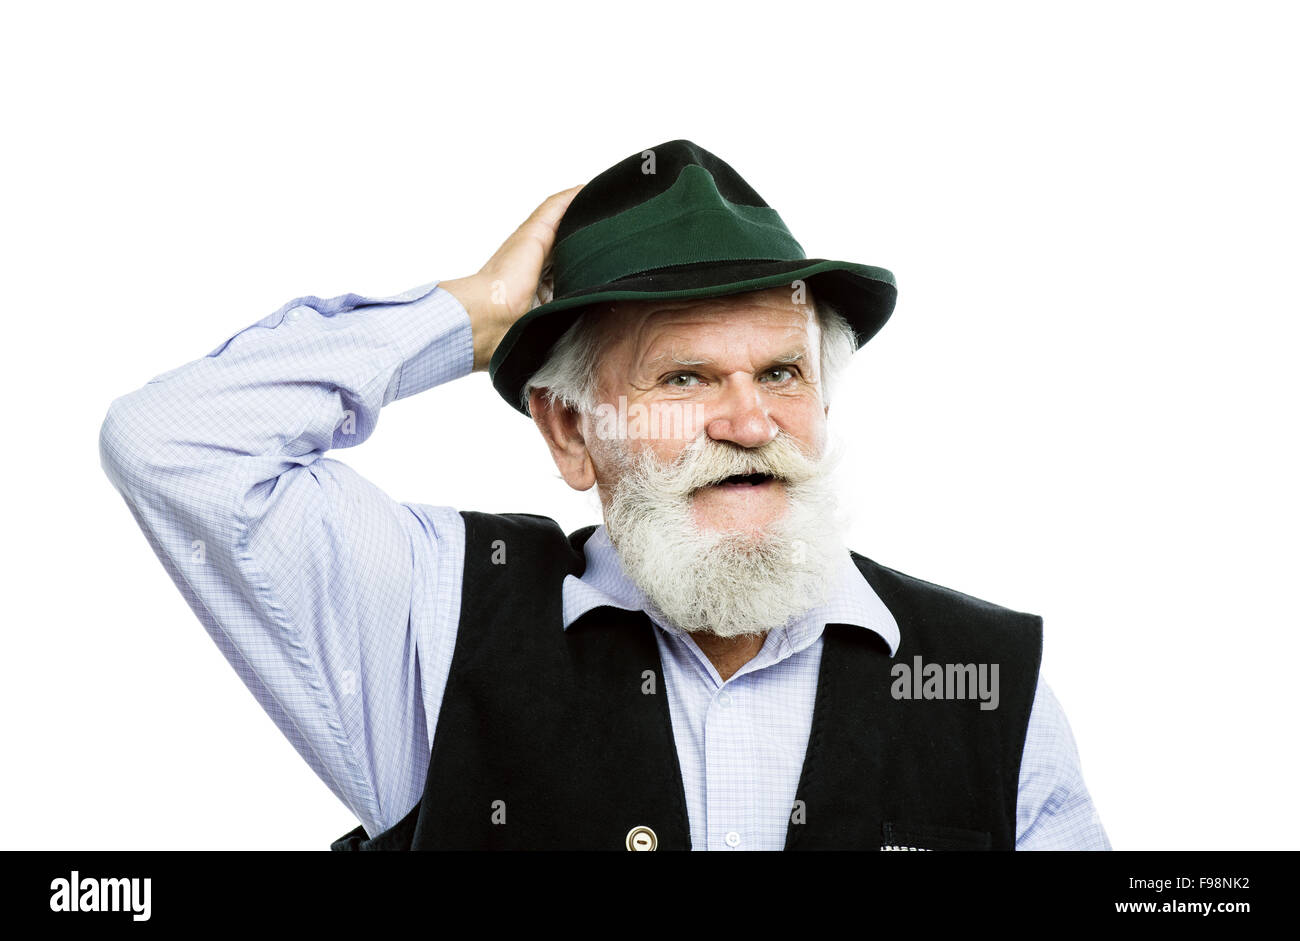 Ritratto di vecchio barbuto uomo bavarese sollevando il suo cappello in segno di saluto in studio su sfondo bianco Foto Stock